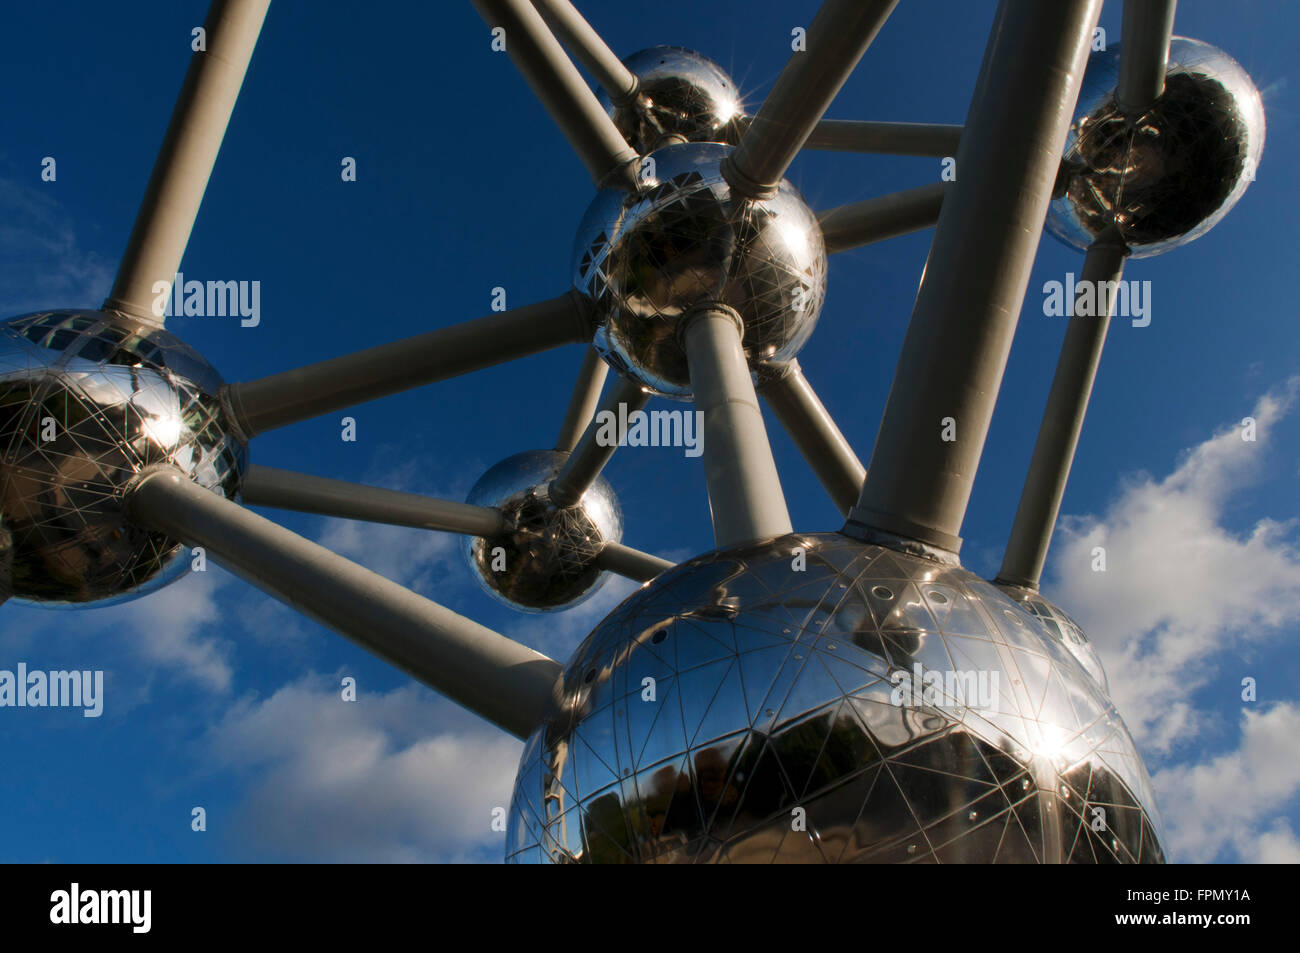 L'Atomium monument conçu par André Waterkeyn, Bruxelles, Belgique, Europe. L'Atomium, avec ses 102 mètres de haut et 2400 tonnes Banque D'Images